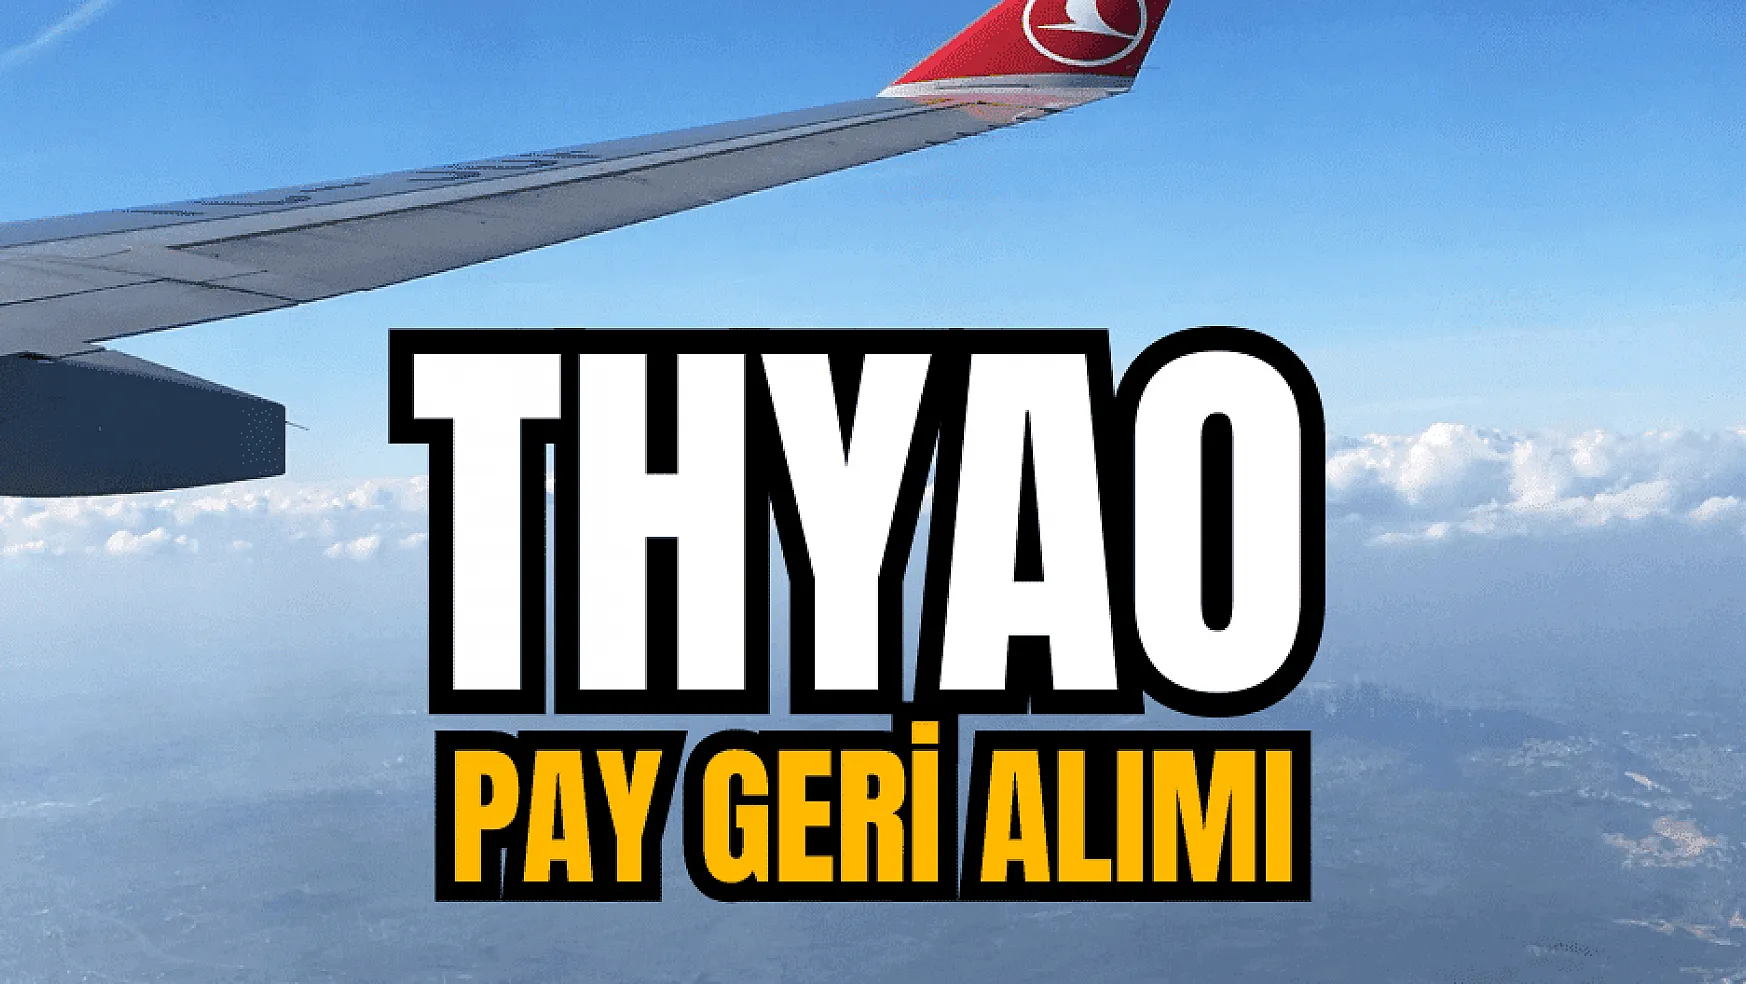 Türk Hava Yolları, pay geri alımı yaptı!